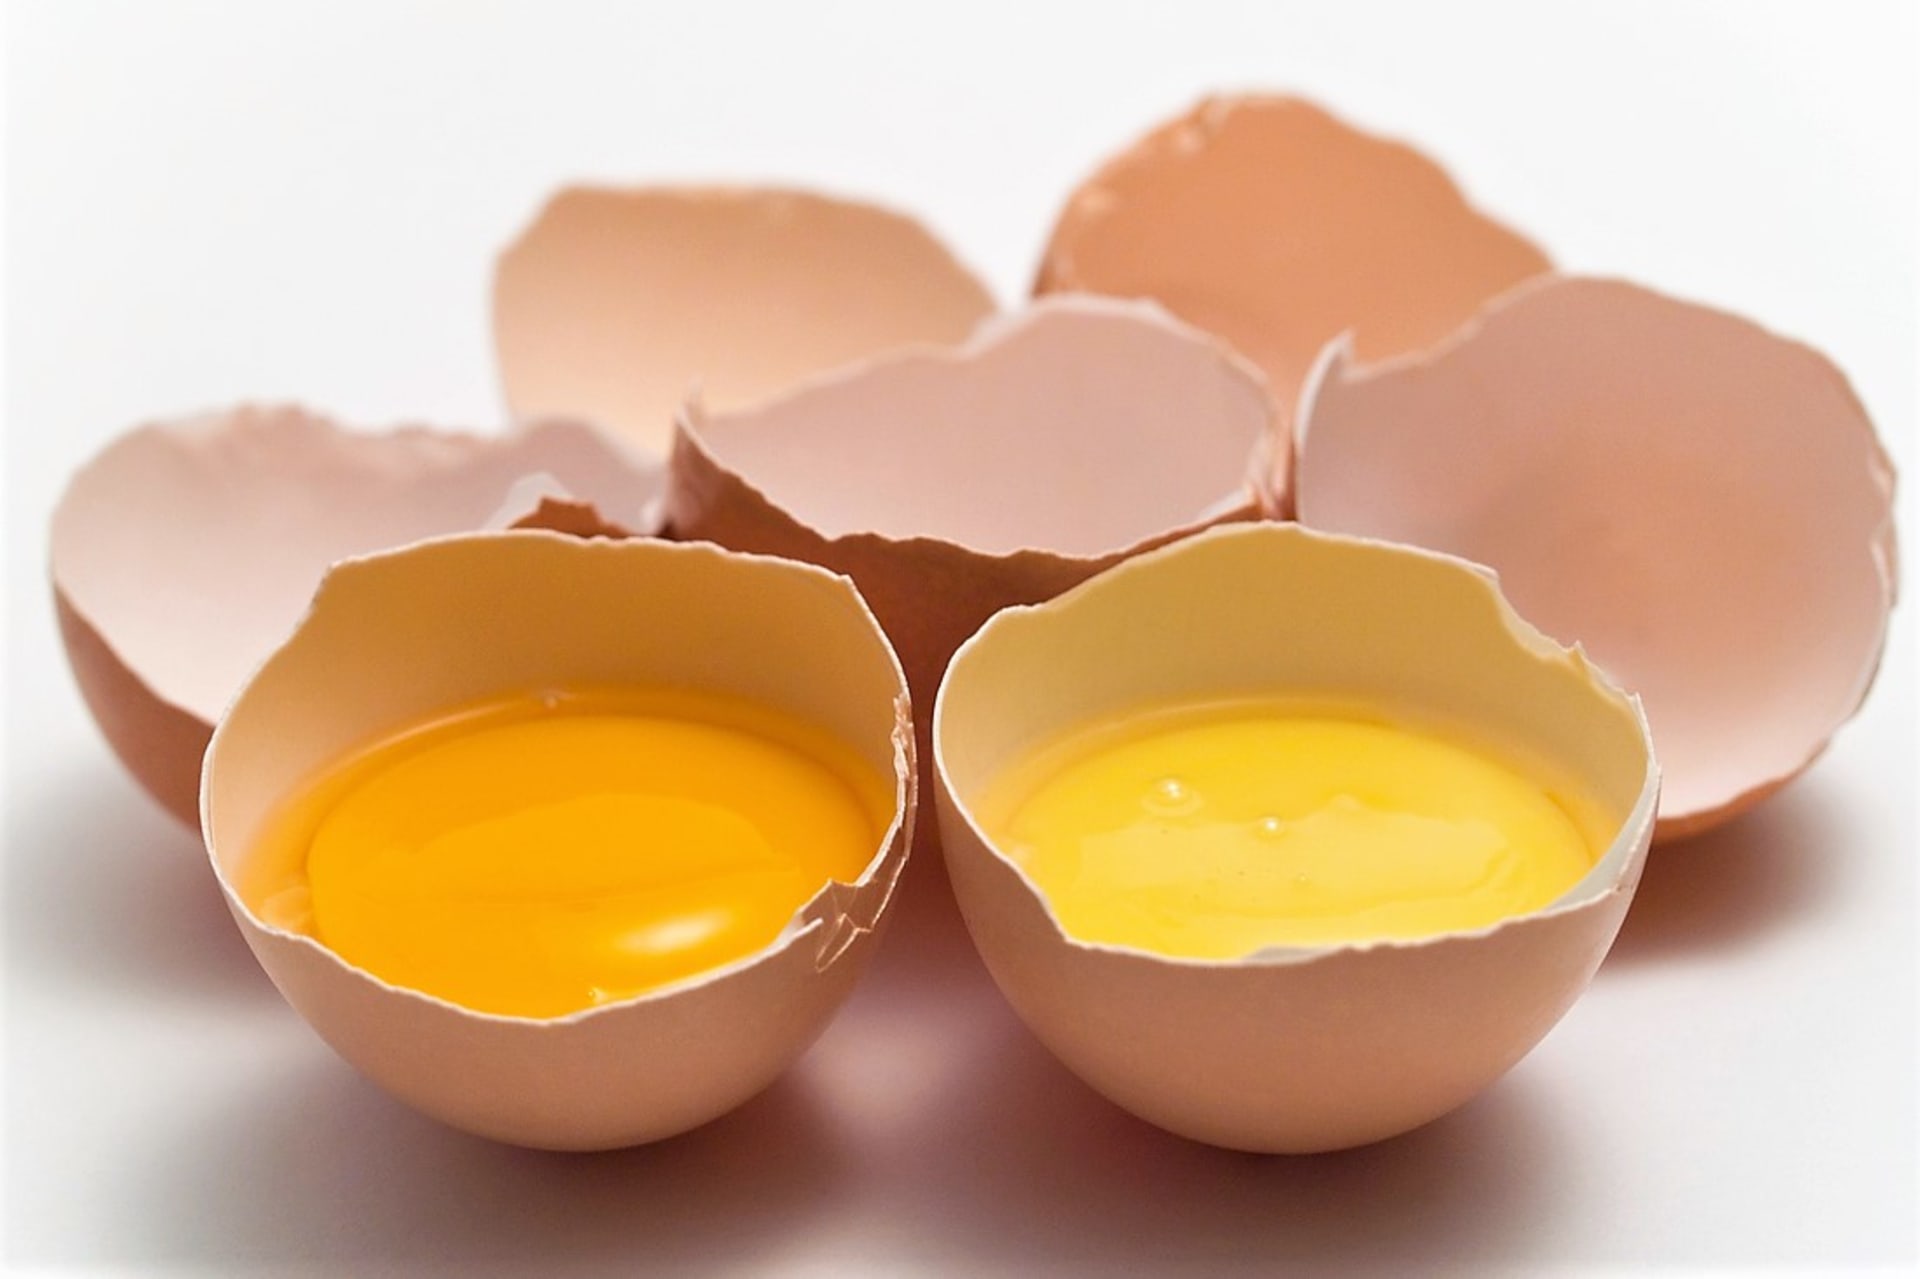 Lákavě oranžové žloutky však dneska mají i vejce zakoupená v obchodech. A to díky krmné směsi obsahující kukuřici.